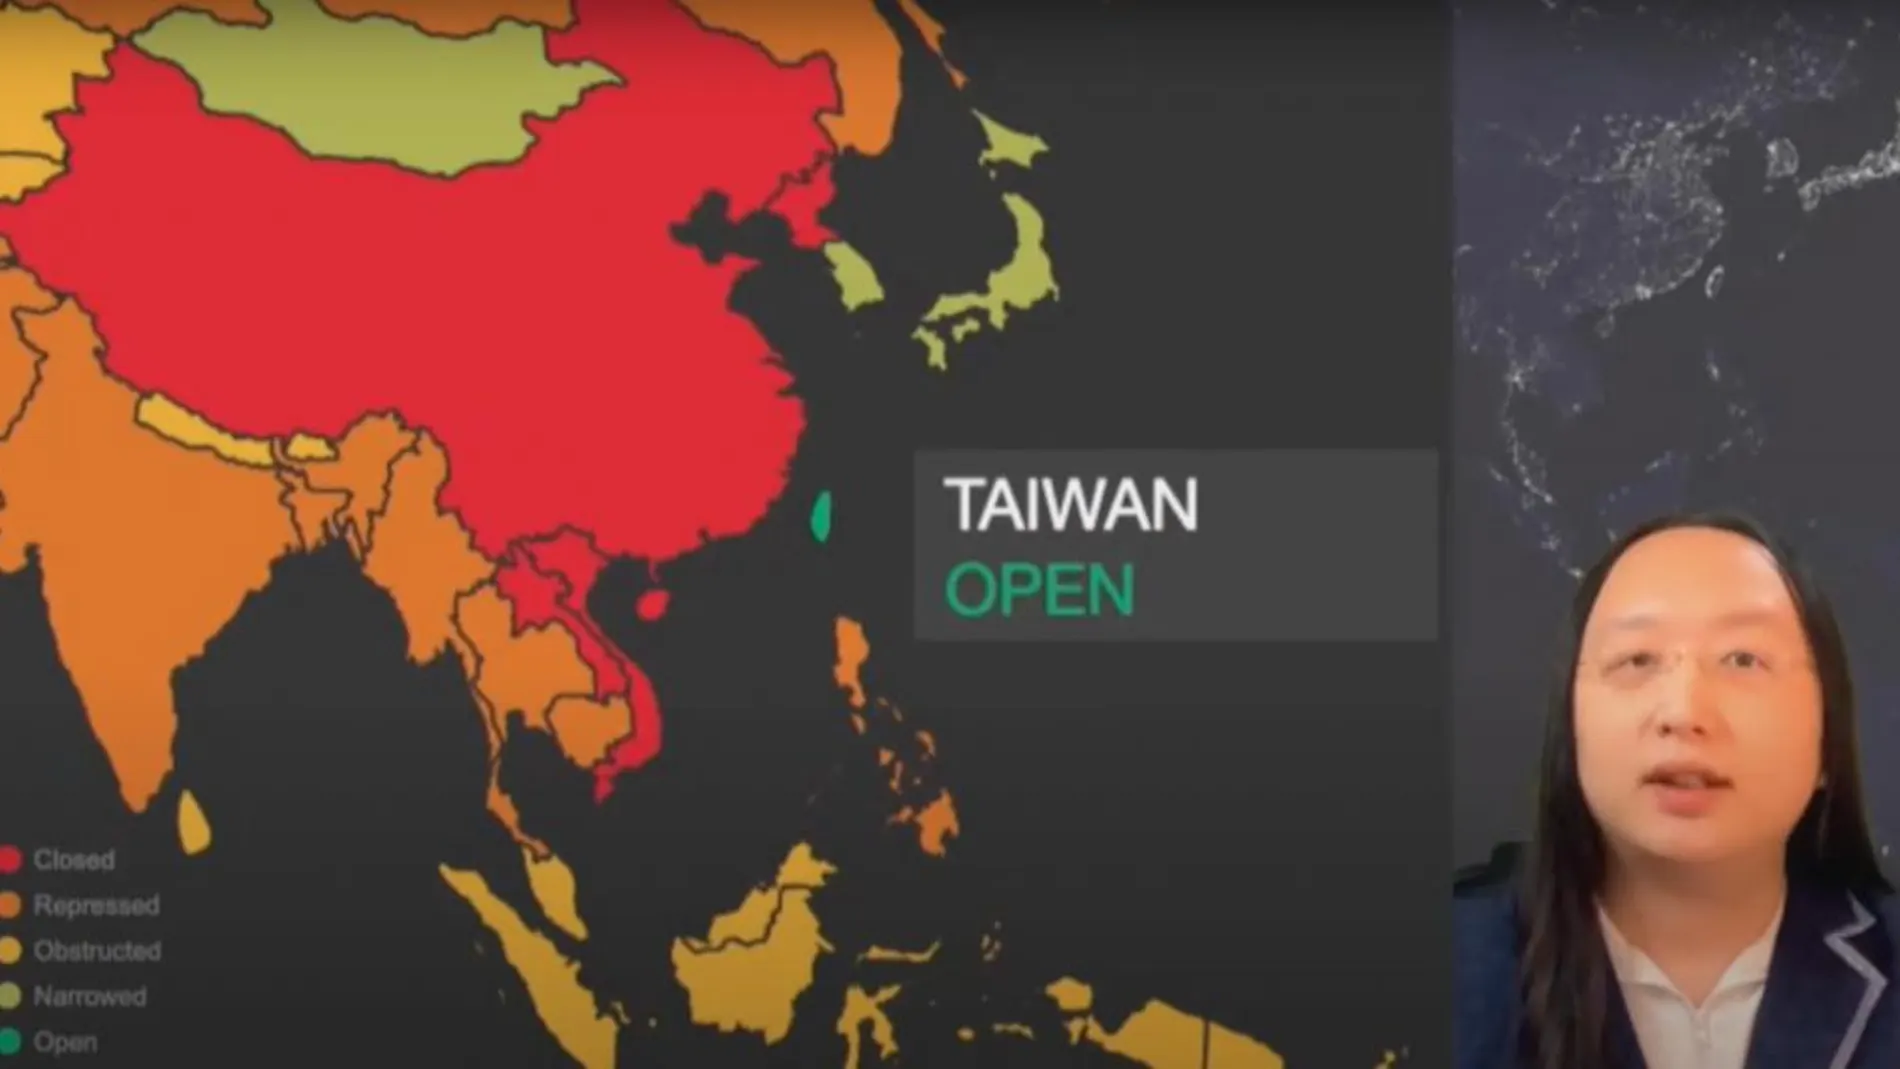 La ministra taiwanesa Audrey Tang durante su exposición en la cumbre de la Democracia con un mapa de China en rojo y Taiwán en verde